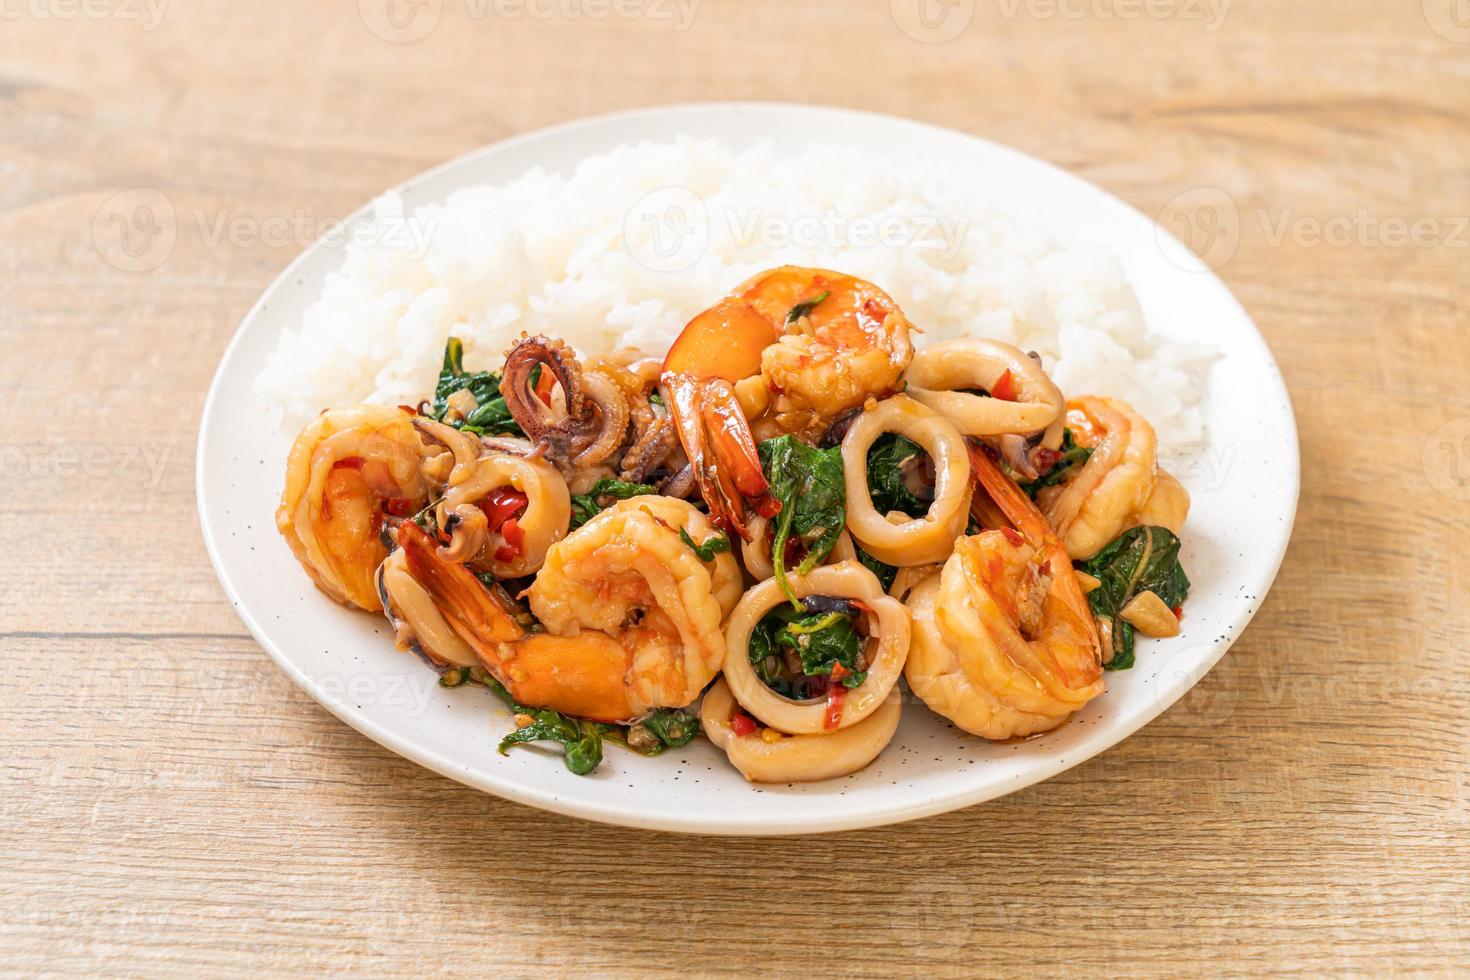 arroz y mariscos salteados de camarones y calamares con albahaca tailandesa - estilo de comida asiática foto